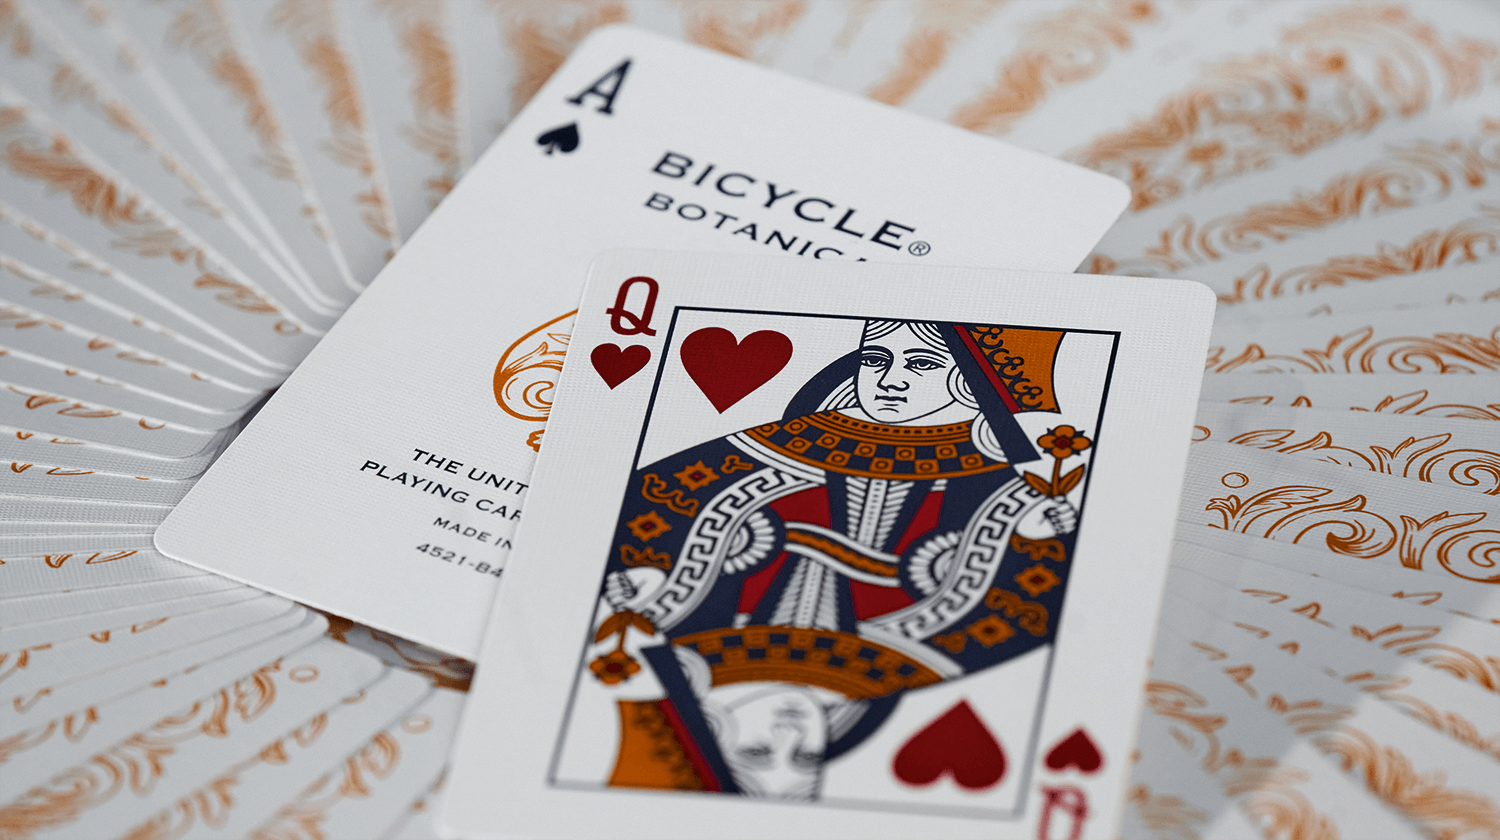 Zwei Karten der Bicycle Creatives Botanica liegen auf einem Hintergrund aus Kartenrückseiten.